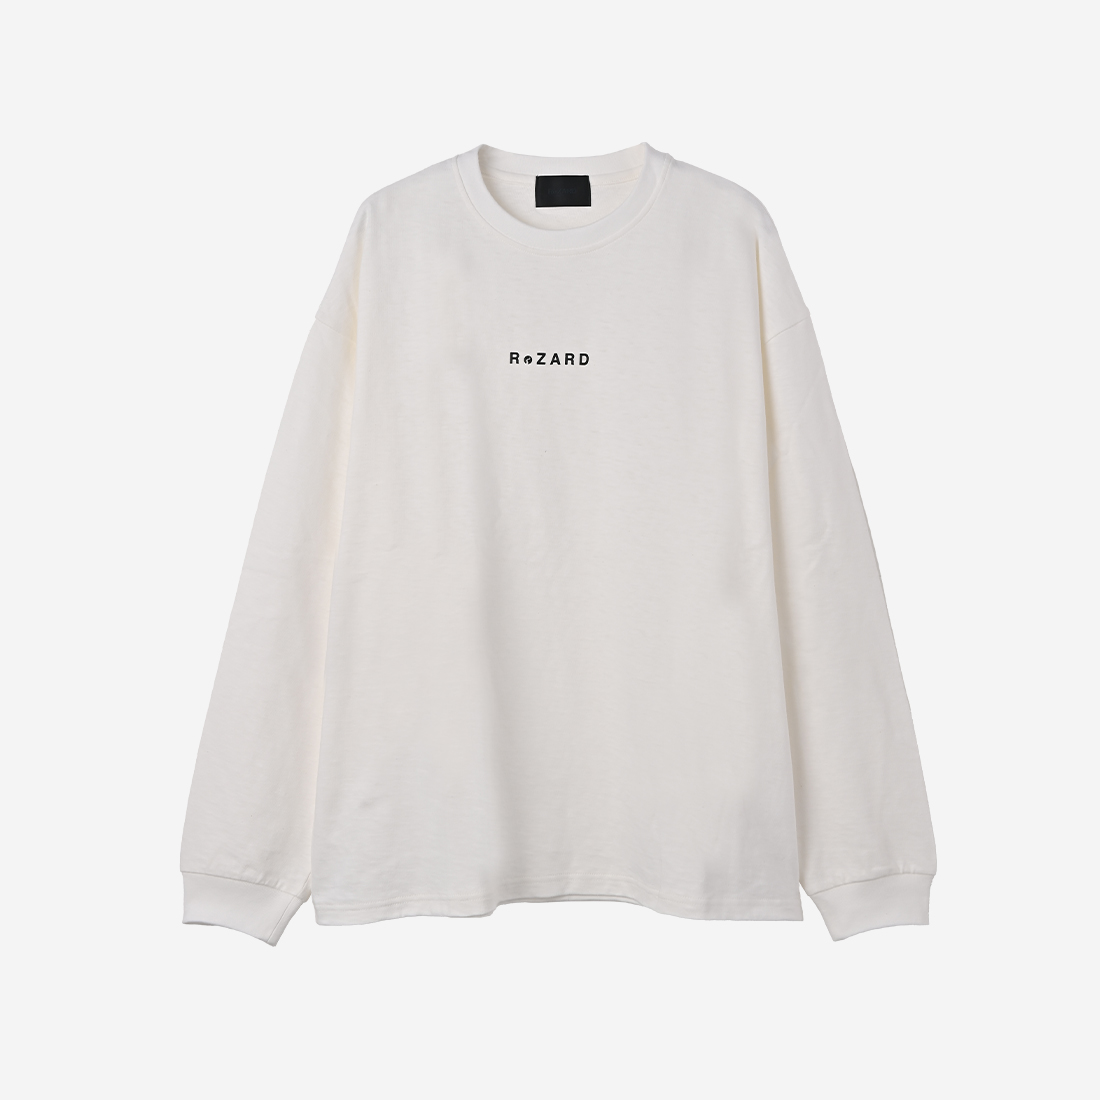 【ReZARD】Logo Printed Long Sleeve T-shirts(White)